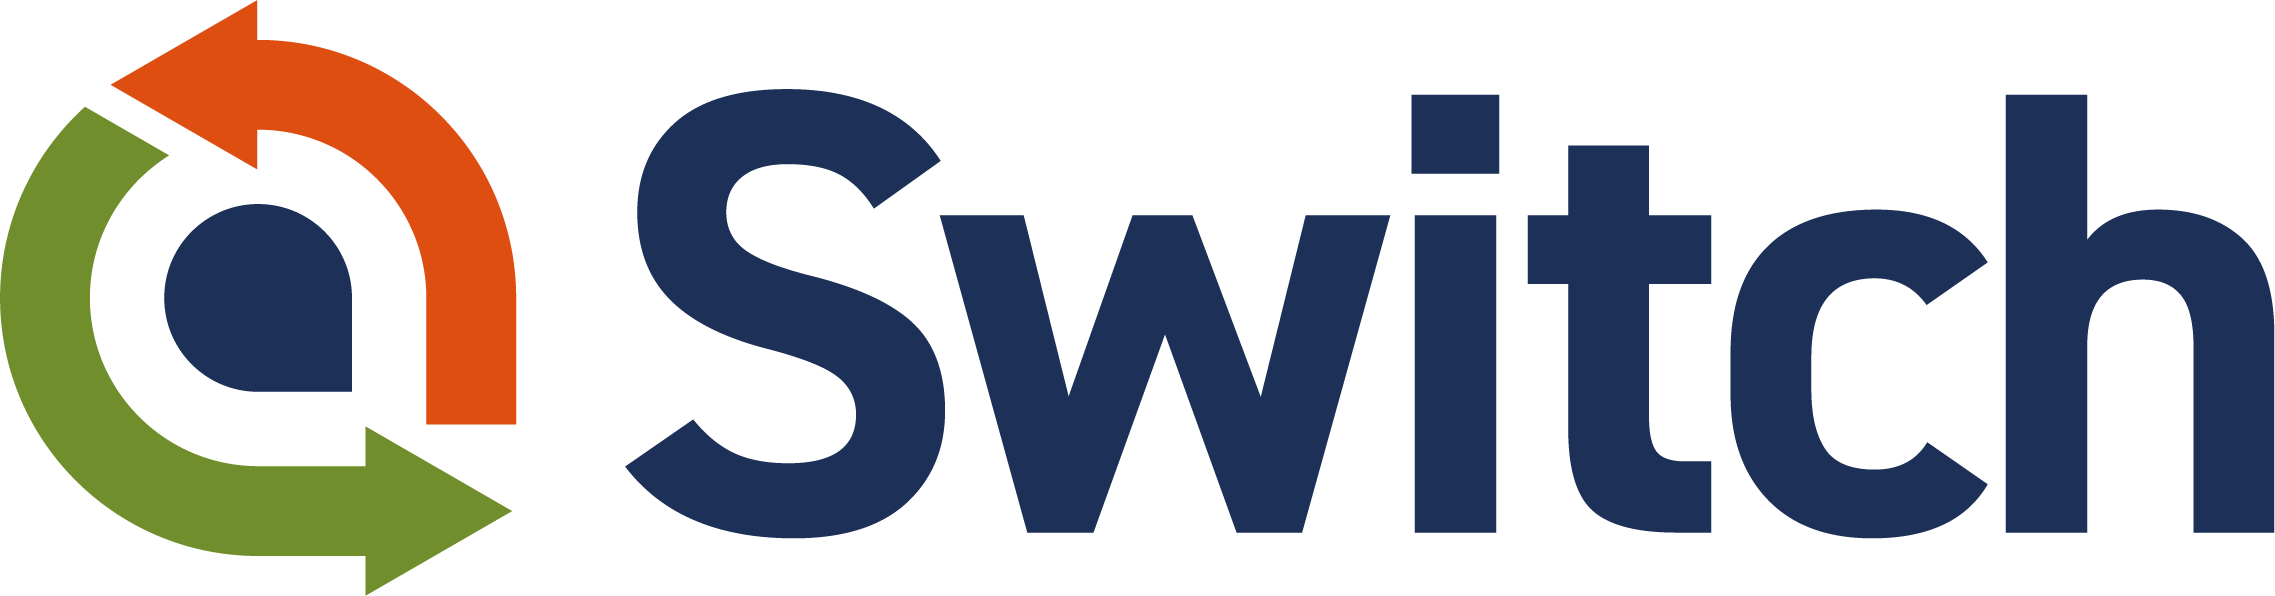 Switch webinar logo